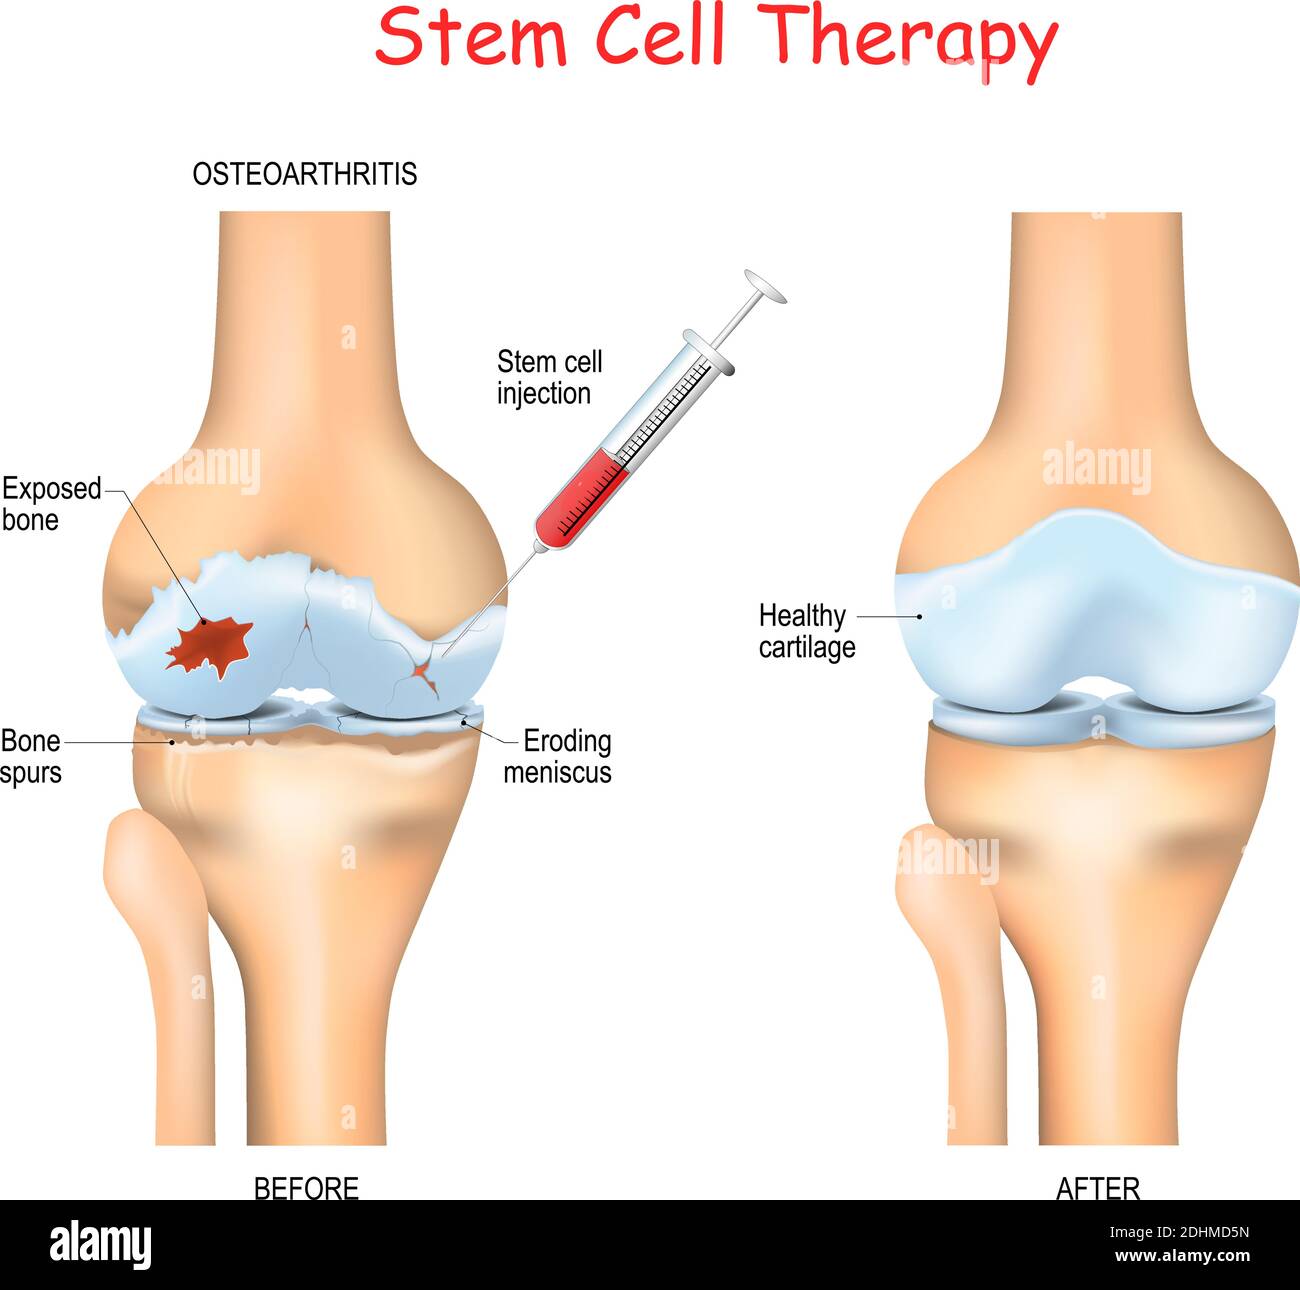 Stammzelltherapie bei Schmerzen bei Arthrose, Knie und Hüften Nutzen Sie die heilenden Eigenschaften Ihrer eigenen Zellen, die aus Knochenmark oder Fettfett gewonnen werden Stock Vektor